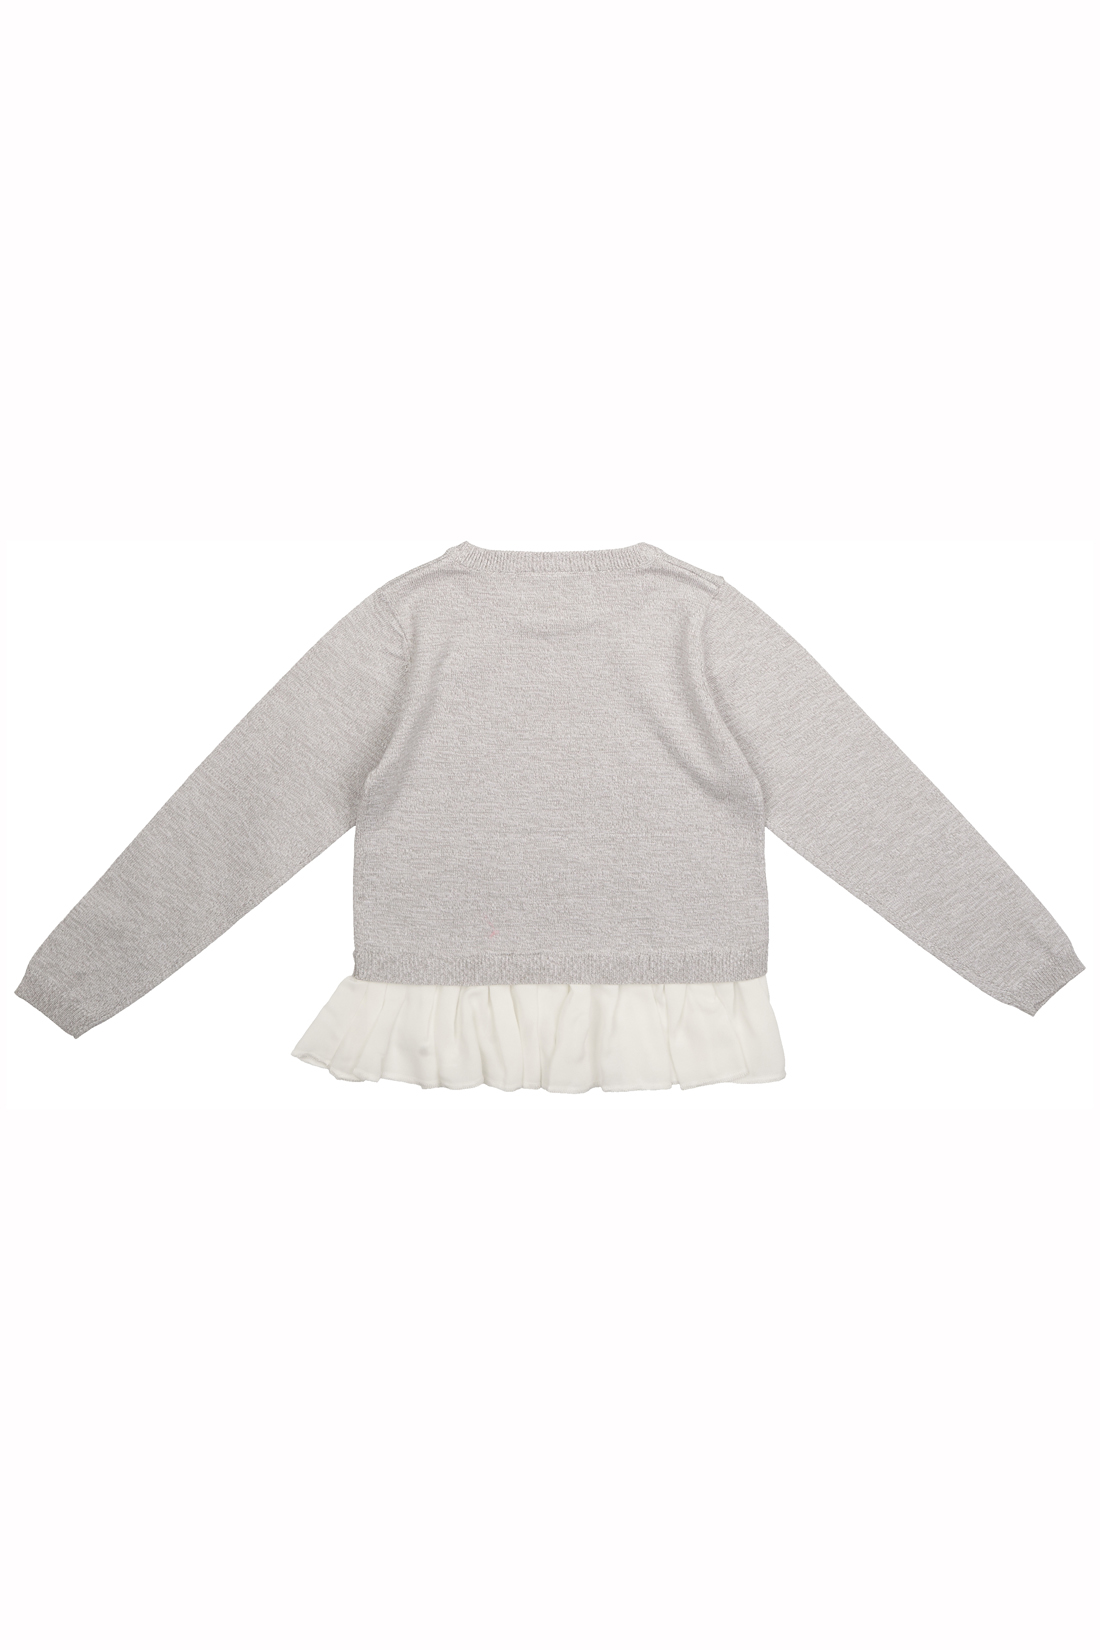 Джемпер для девочки (арт. baon BK139001), размер 110-116, цвет silver melange#серый Джемпер для девочки (арт. baon BK139001) - фото 3